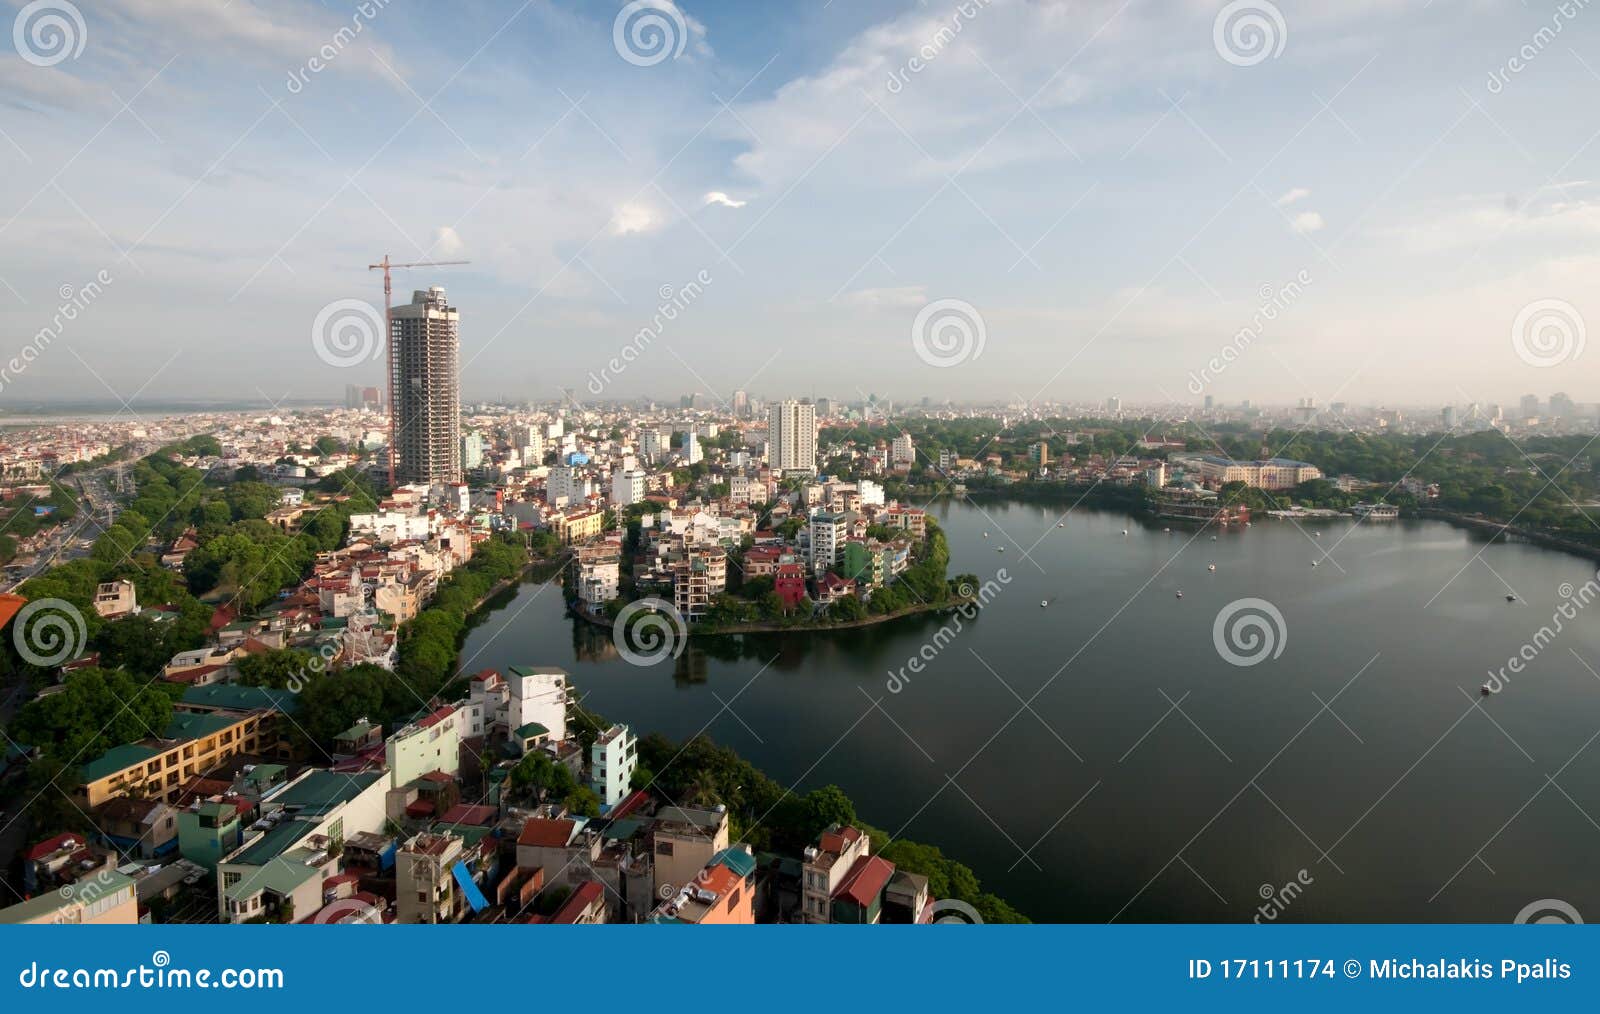 【携程攻略】景点,作为越南的首都，河内位于越南民族发源地红河平原的中部，整个城市位…